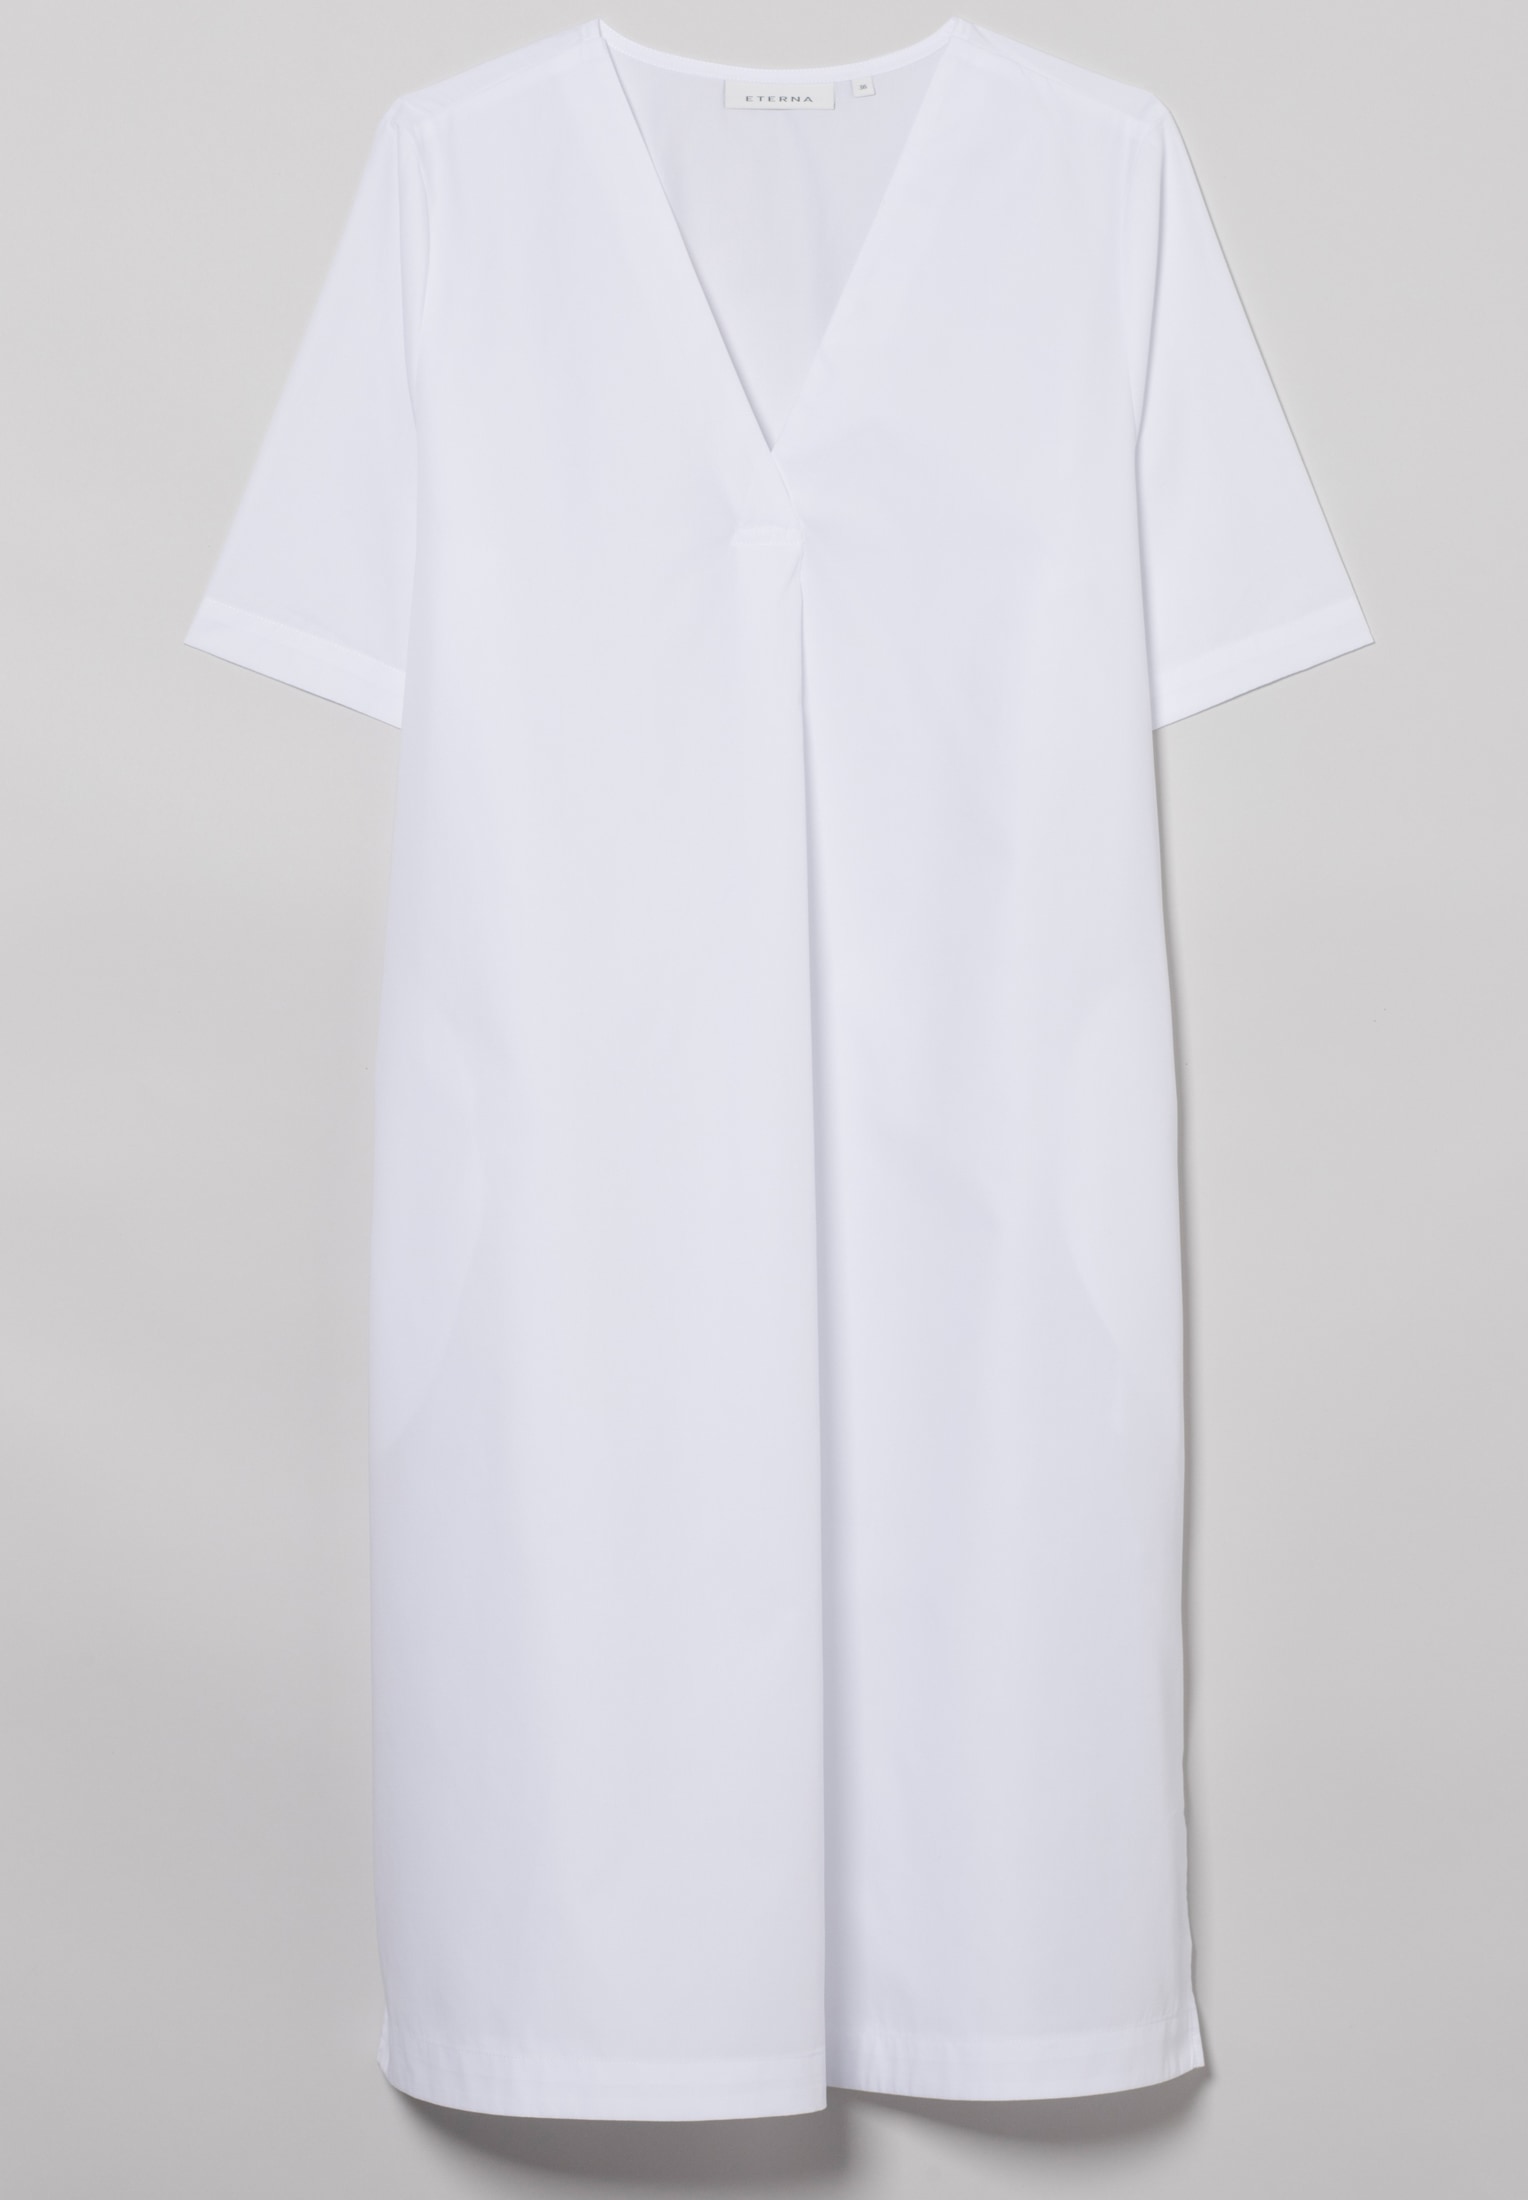 Blusenkleid in weiß unifarben | 2DR00211-00-01-40-1/2 | 40 | | weiß Kurzarm